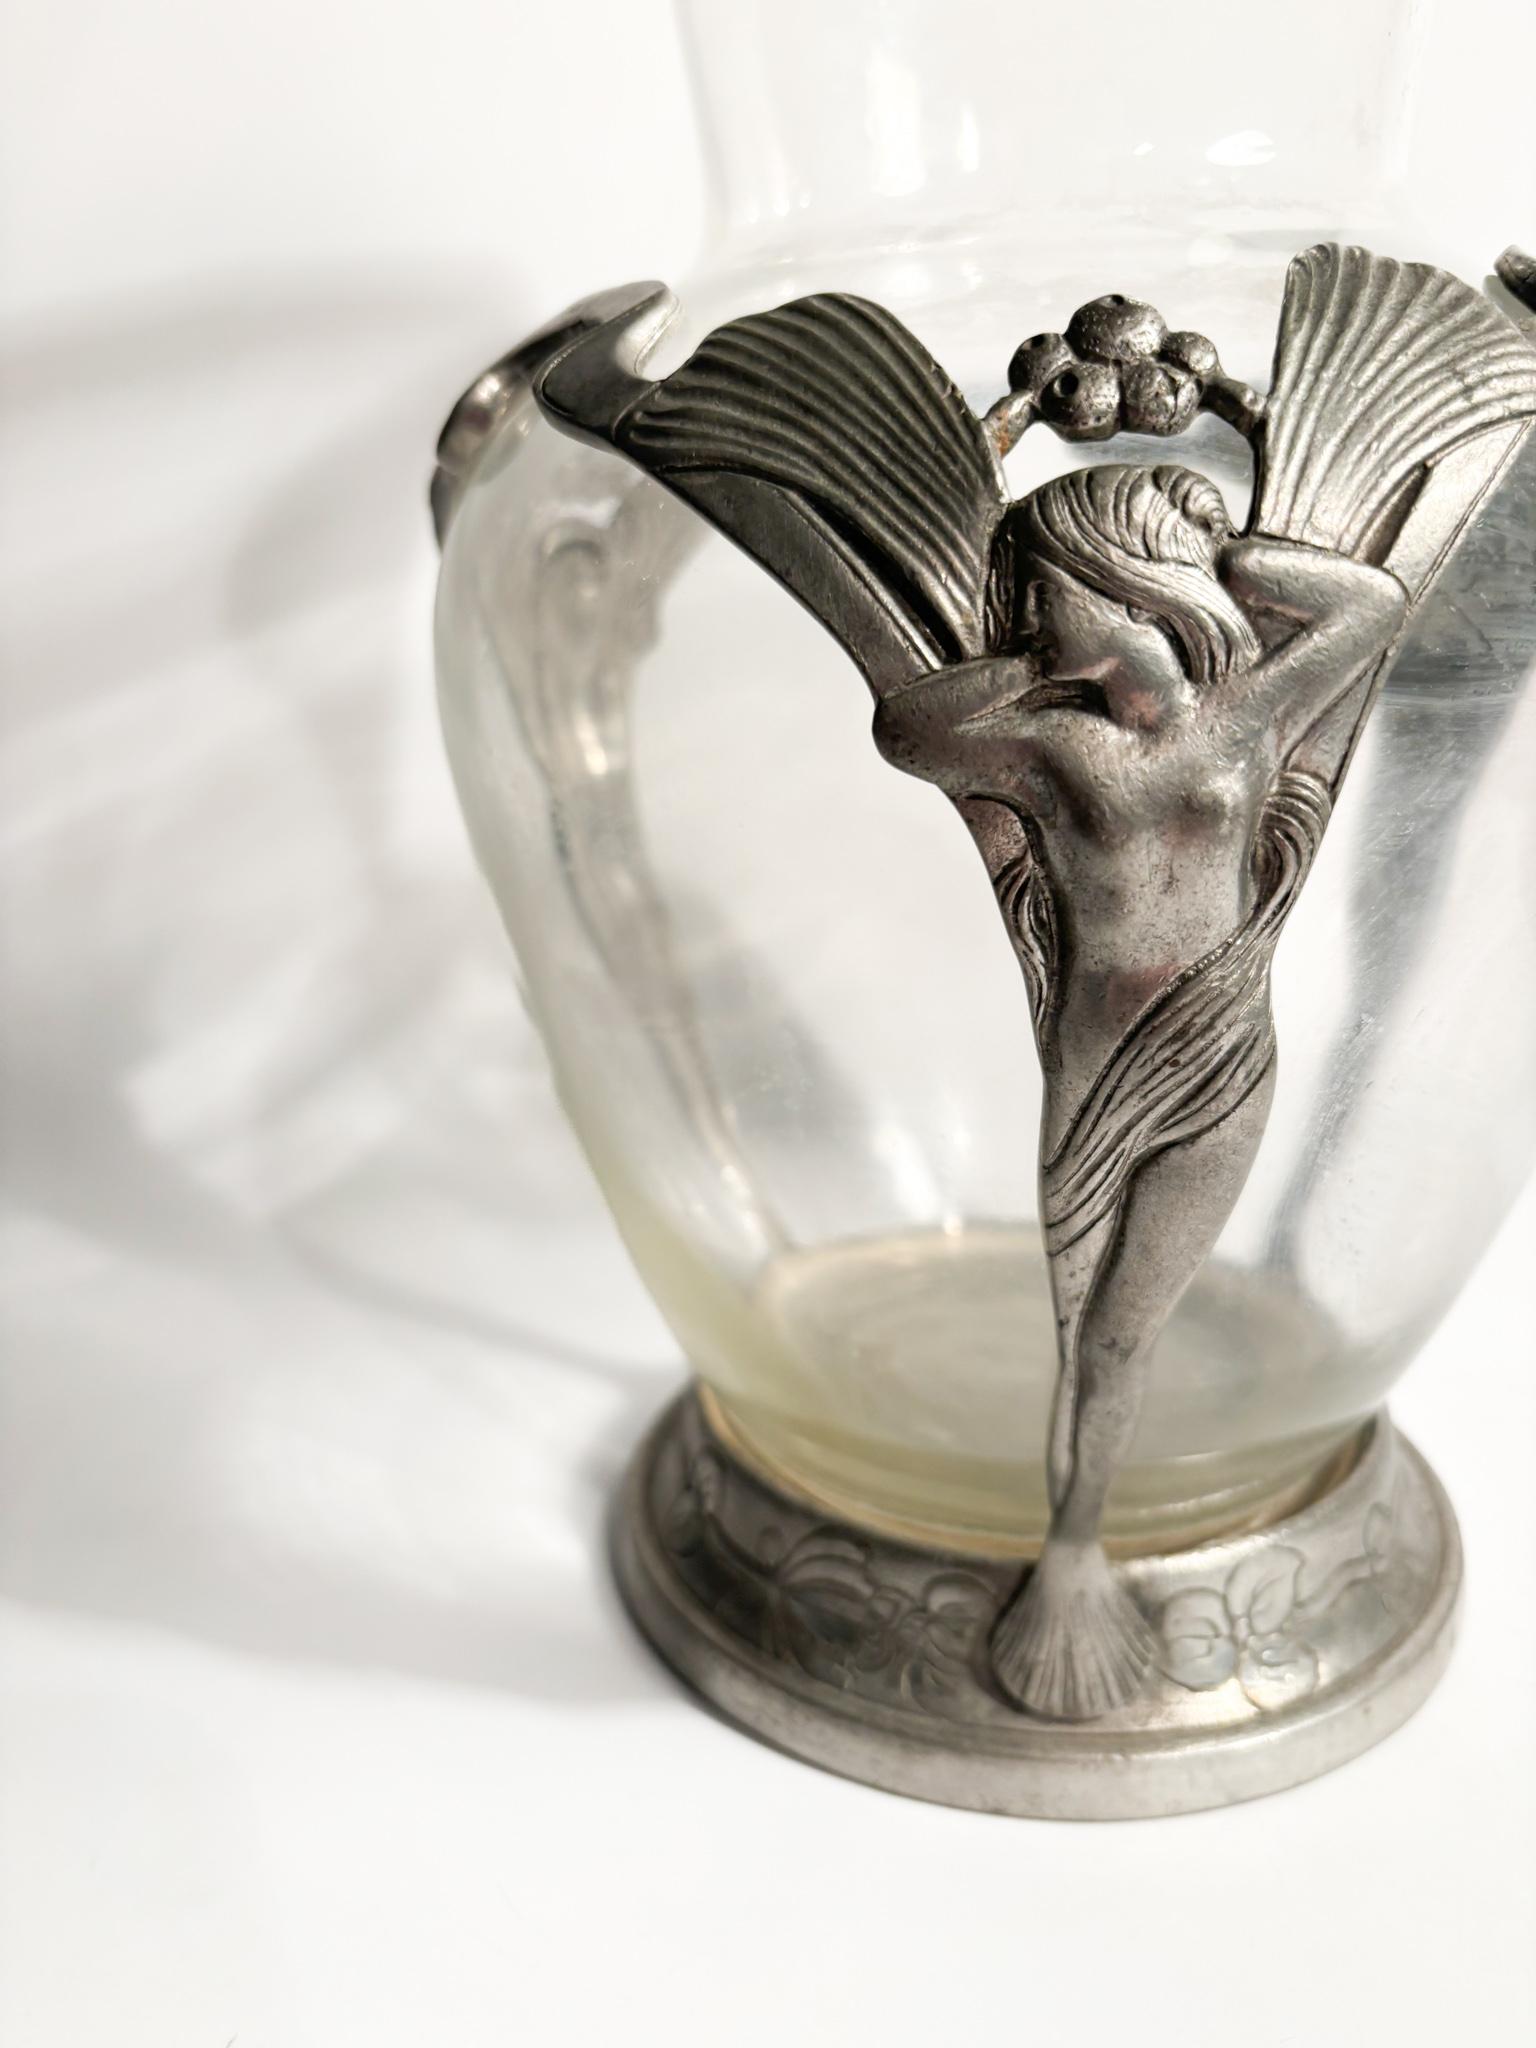 Liberty-Vase aus transparentem Glas und Zinn mit geschnitzten Damen, aus dem frühen 20. Jahrhundert

Ø cm 16 h cm 28

Der Jugendstil ist ein internationaler Stil der Kunst, Architektur und angewandten Kunst, insbesondere der dekorativen Künste, der